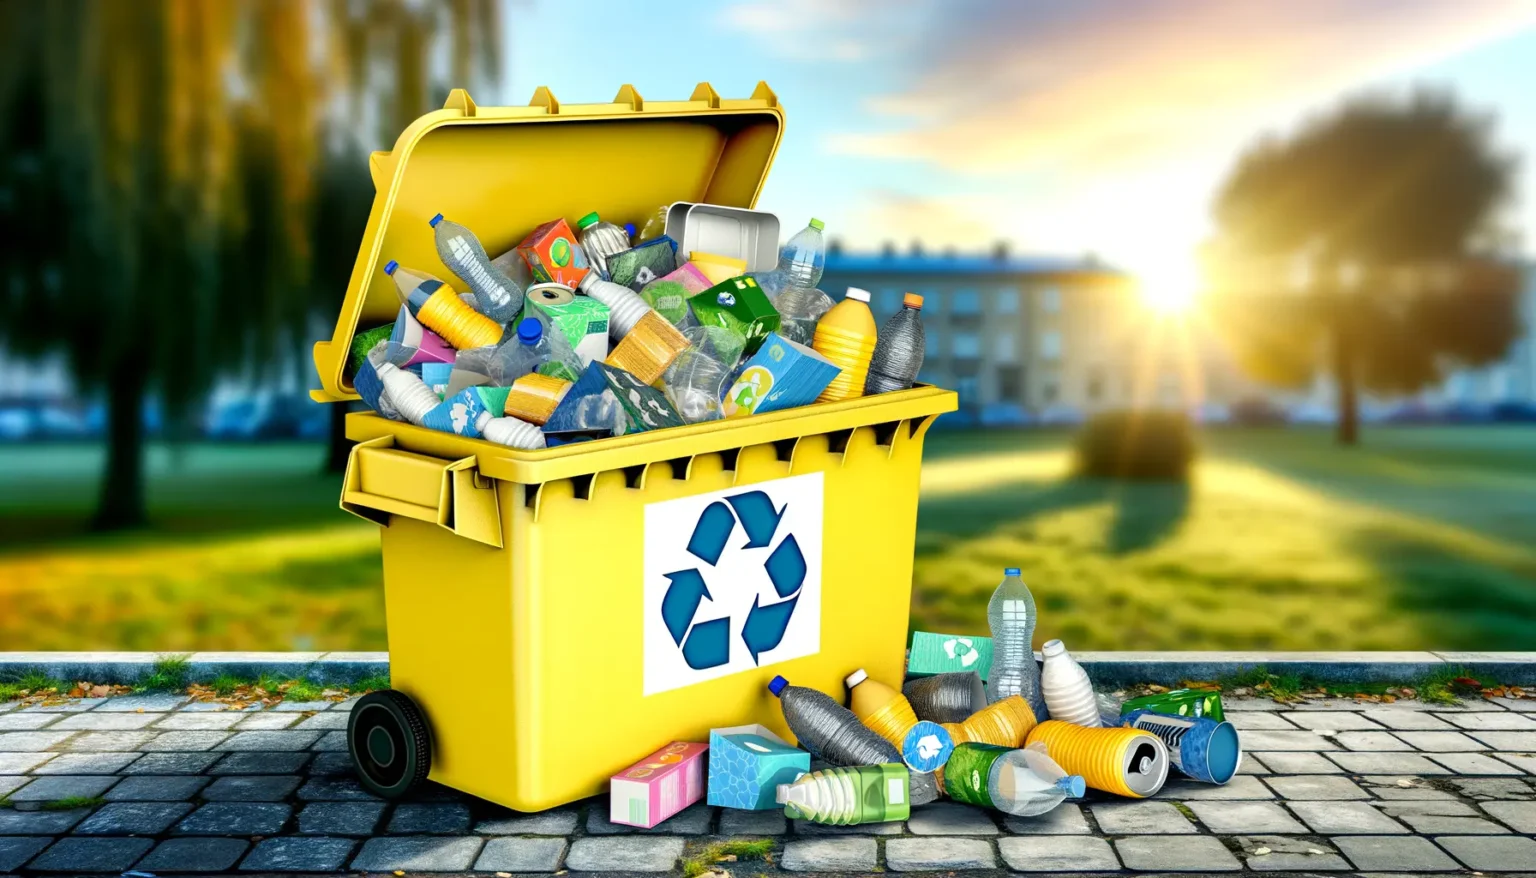 Eine überquellende gelbe Recyclingtonne mit verschiedenen Plastikflaschen, Dosen und Verpackungen auf einem gepflasterten Weg vor einer städtischen Parklandschaft mit Sonnenuntergang im Hintergrund. Auf der Tonne ist das Recycling-Symbol zu erkennen.